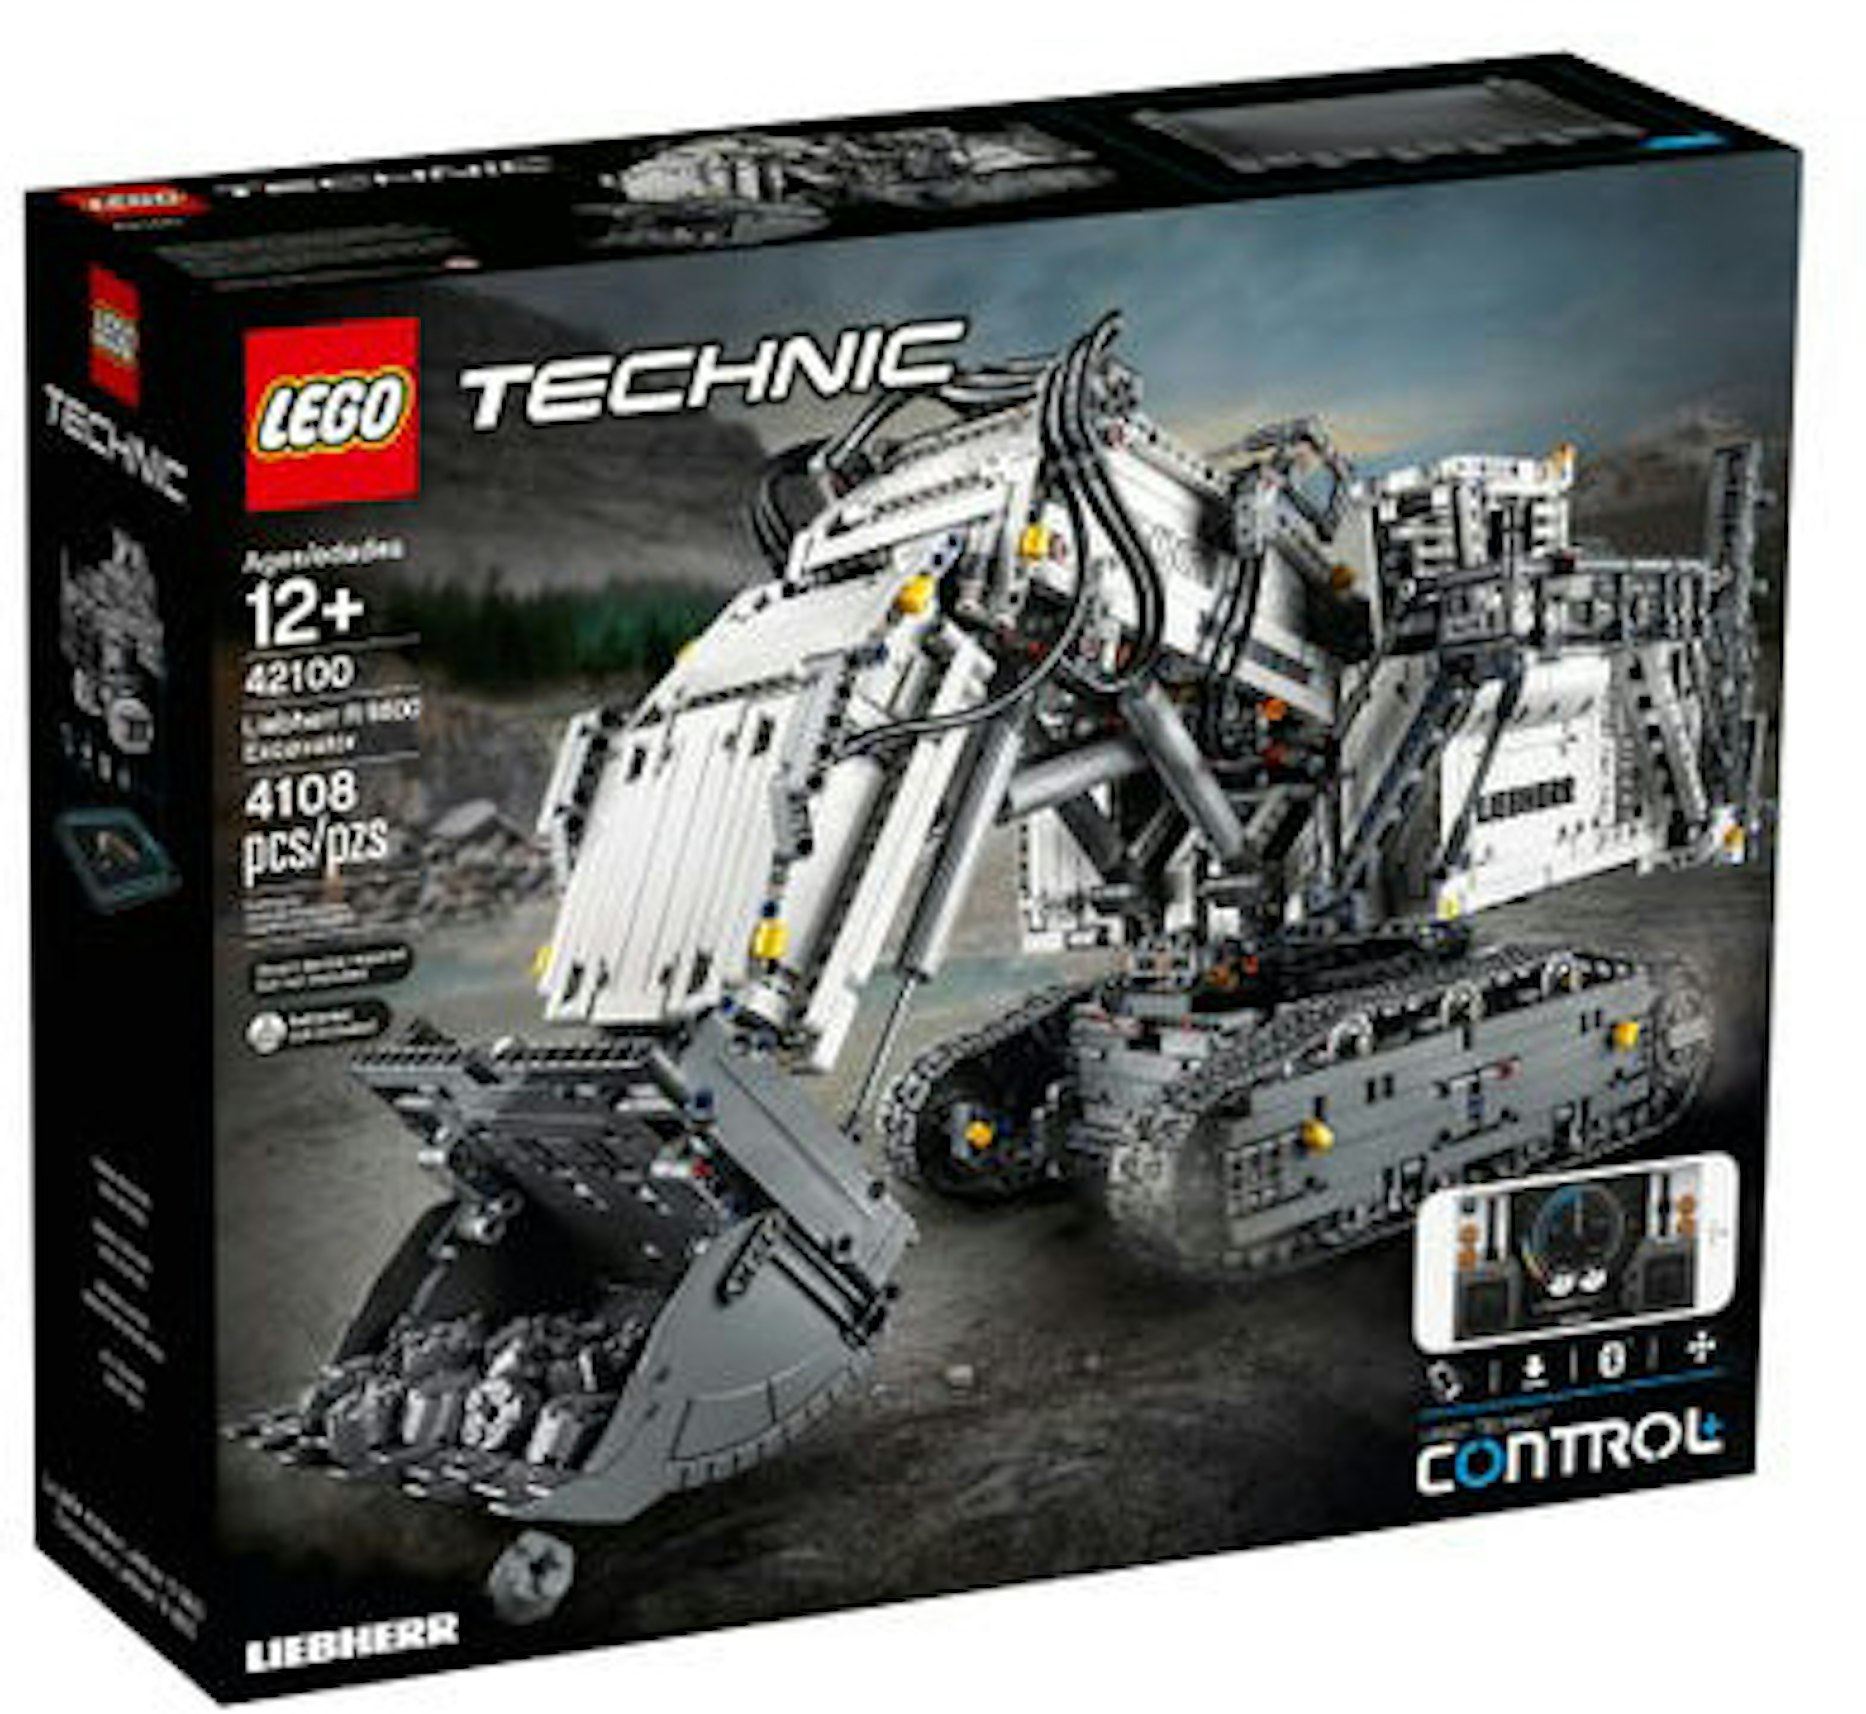 LEGO Technic Powered Up Leibherr 9800 Excavator Set 42100 US